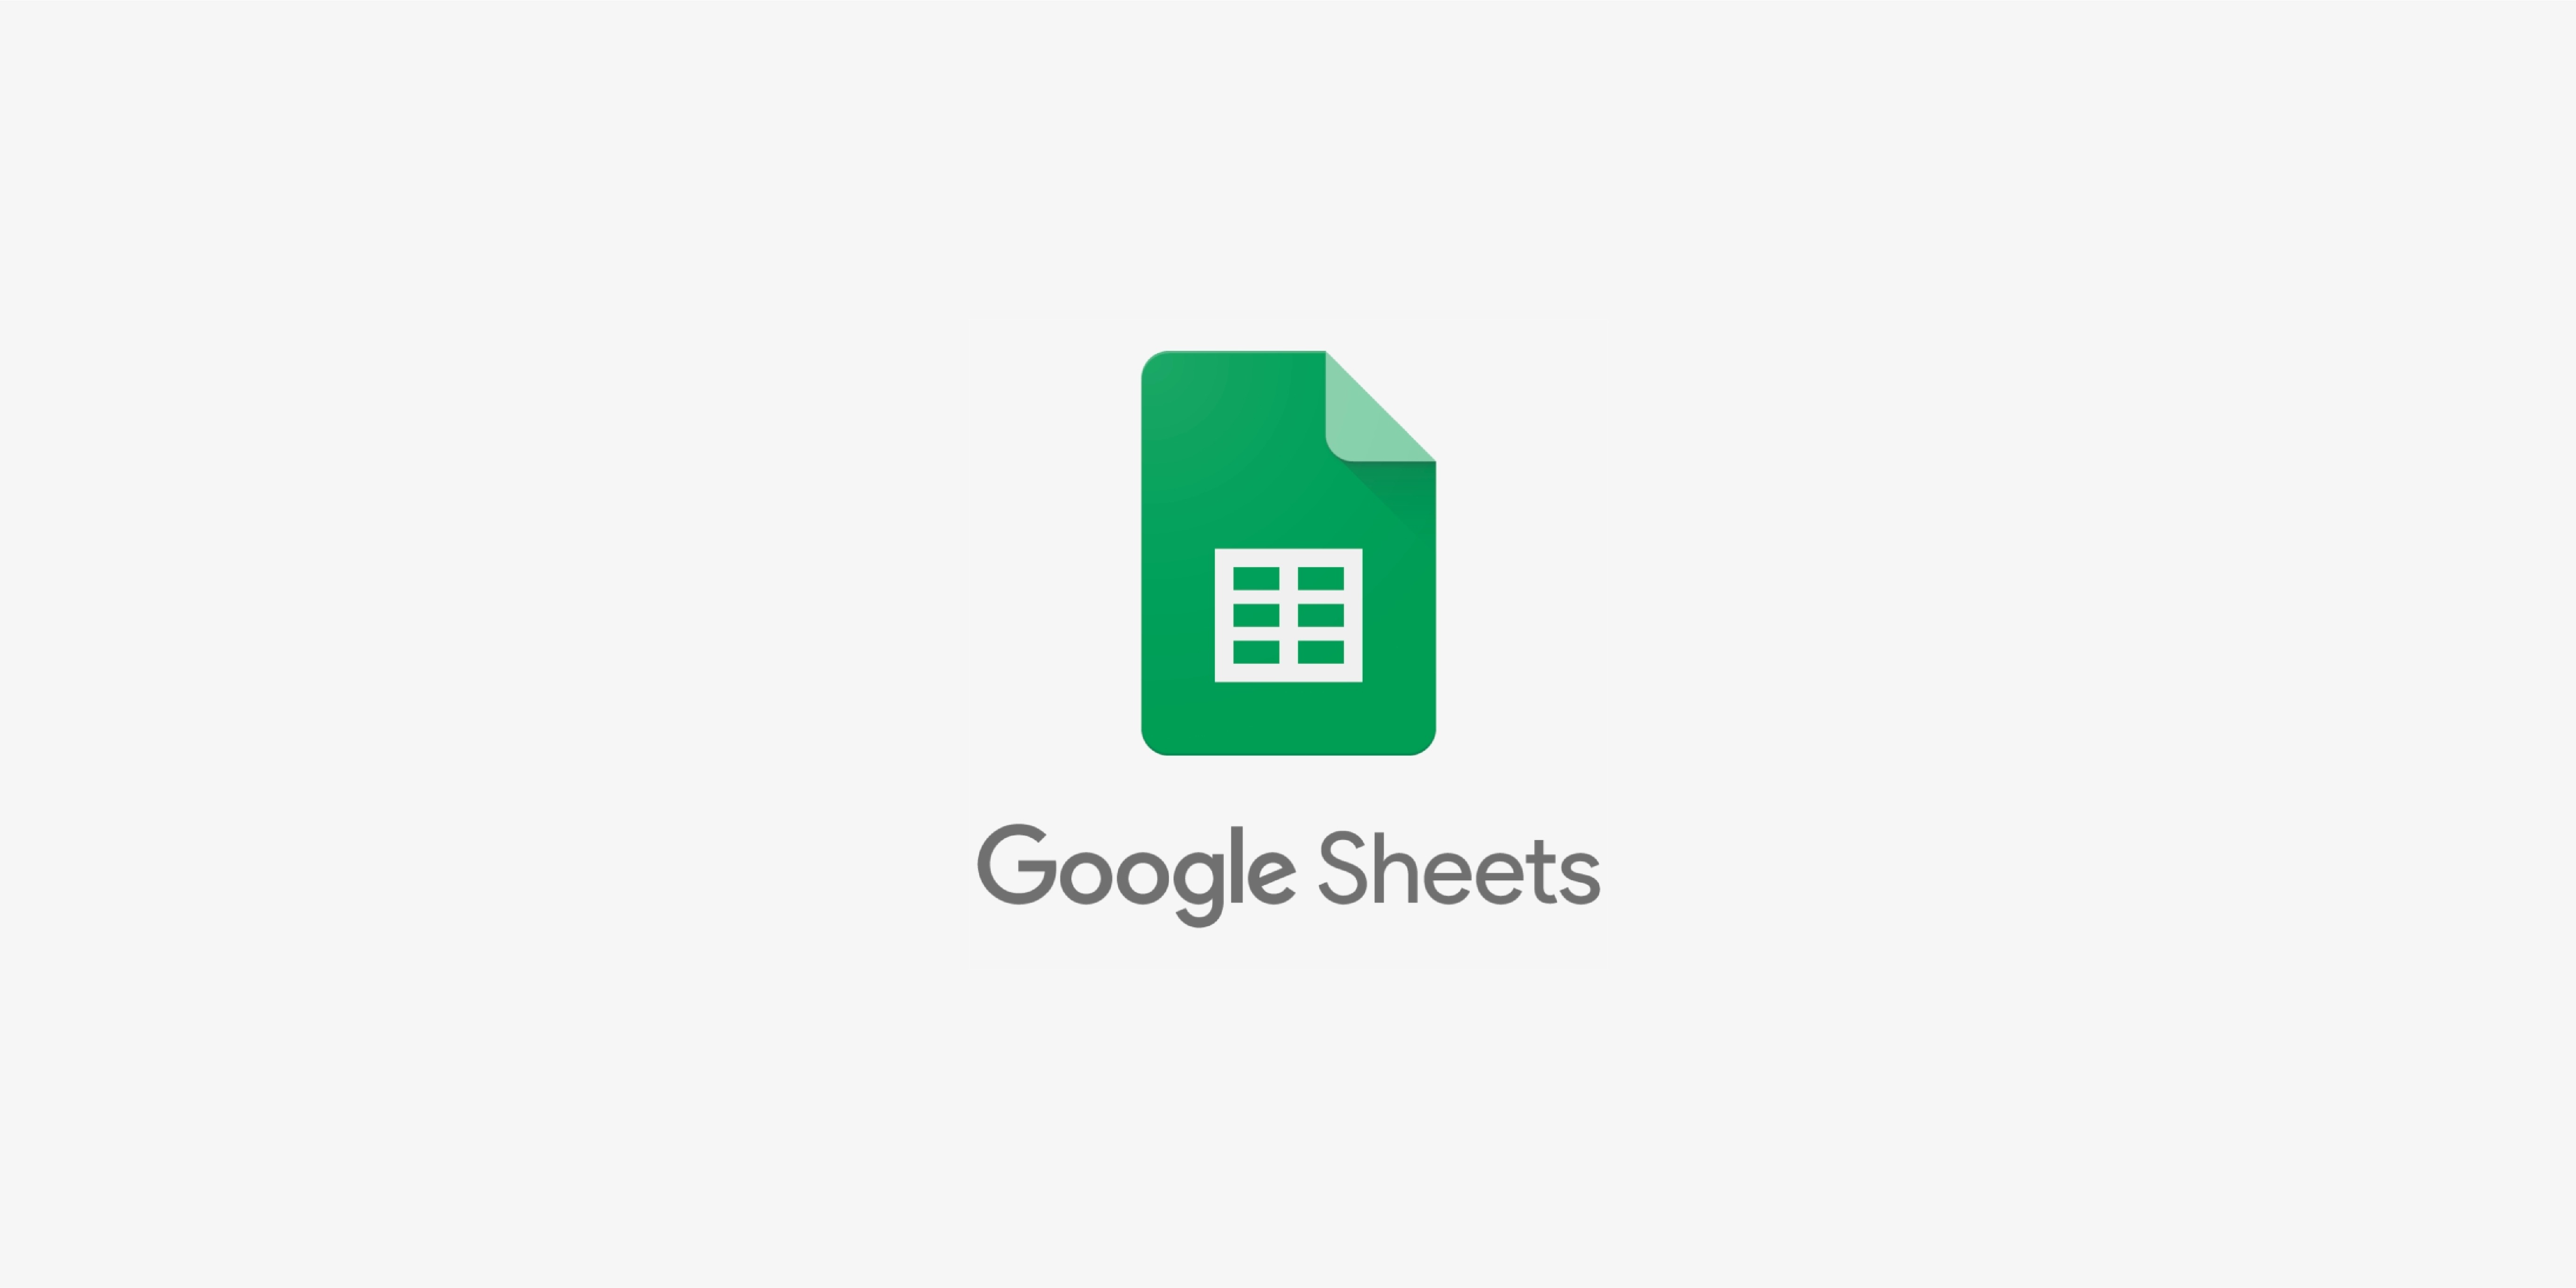 Estos trucos ayudan a trabajar mejor en Google Sheets